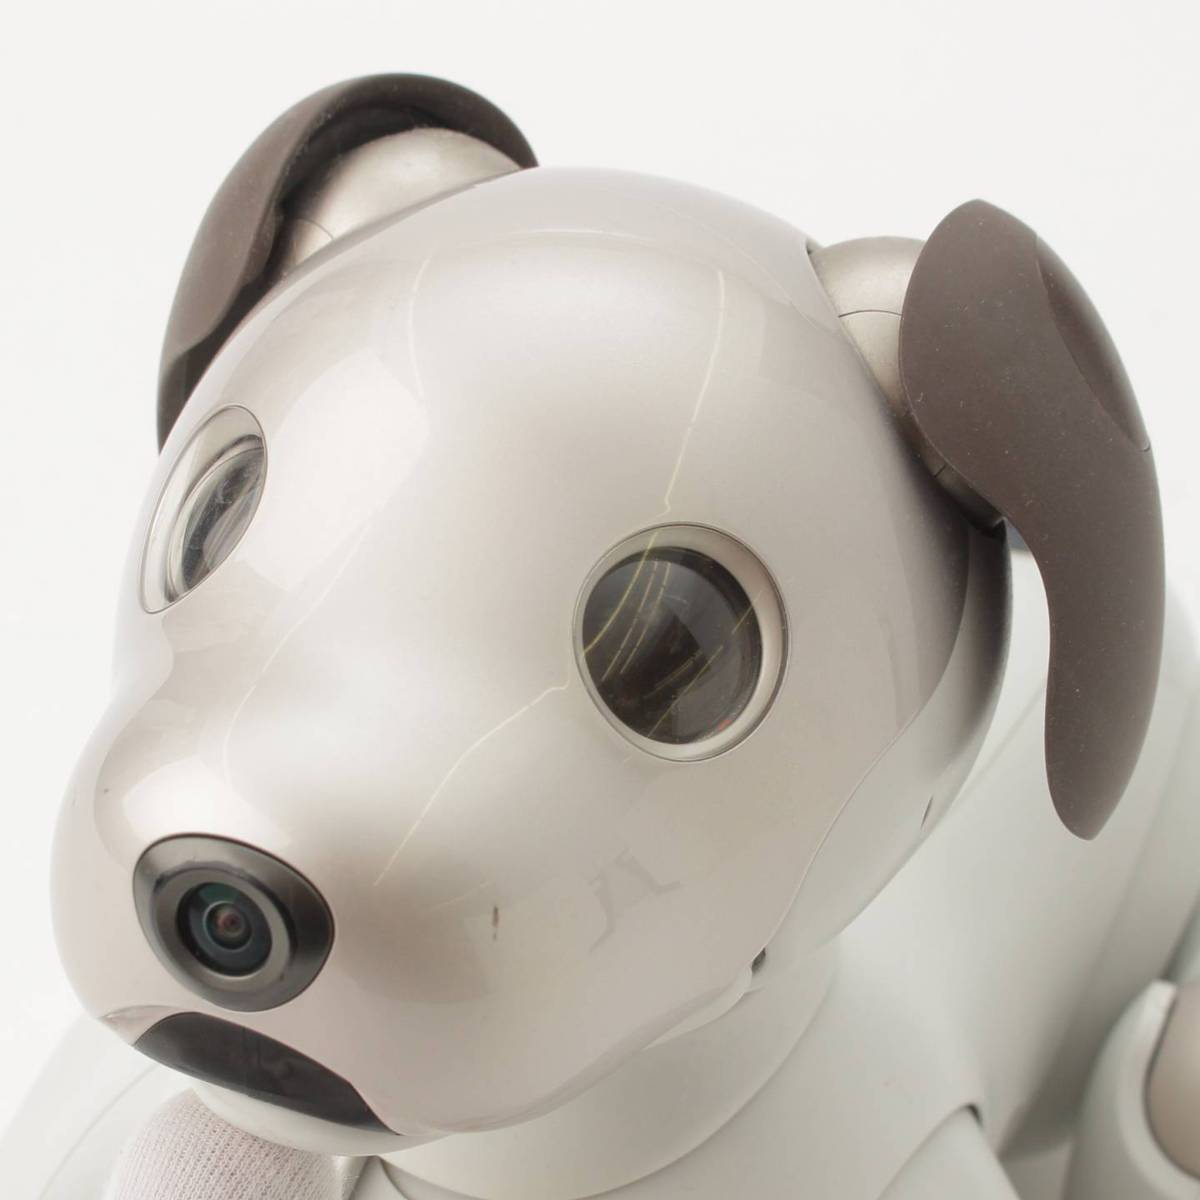 ソニー SONY 犬型 バーチャルペット ロボット aibo アイボ ERS 